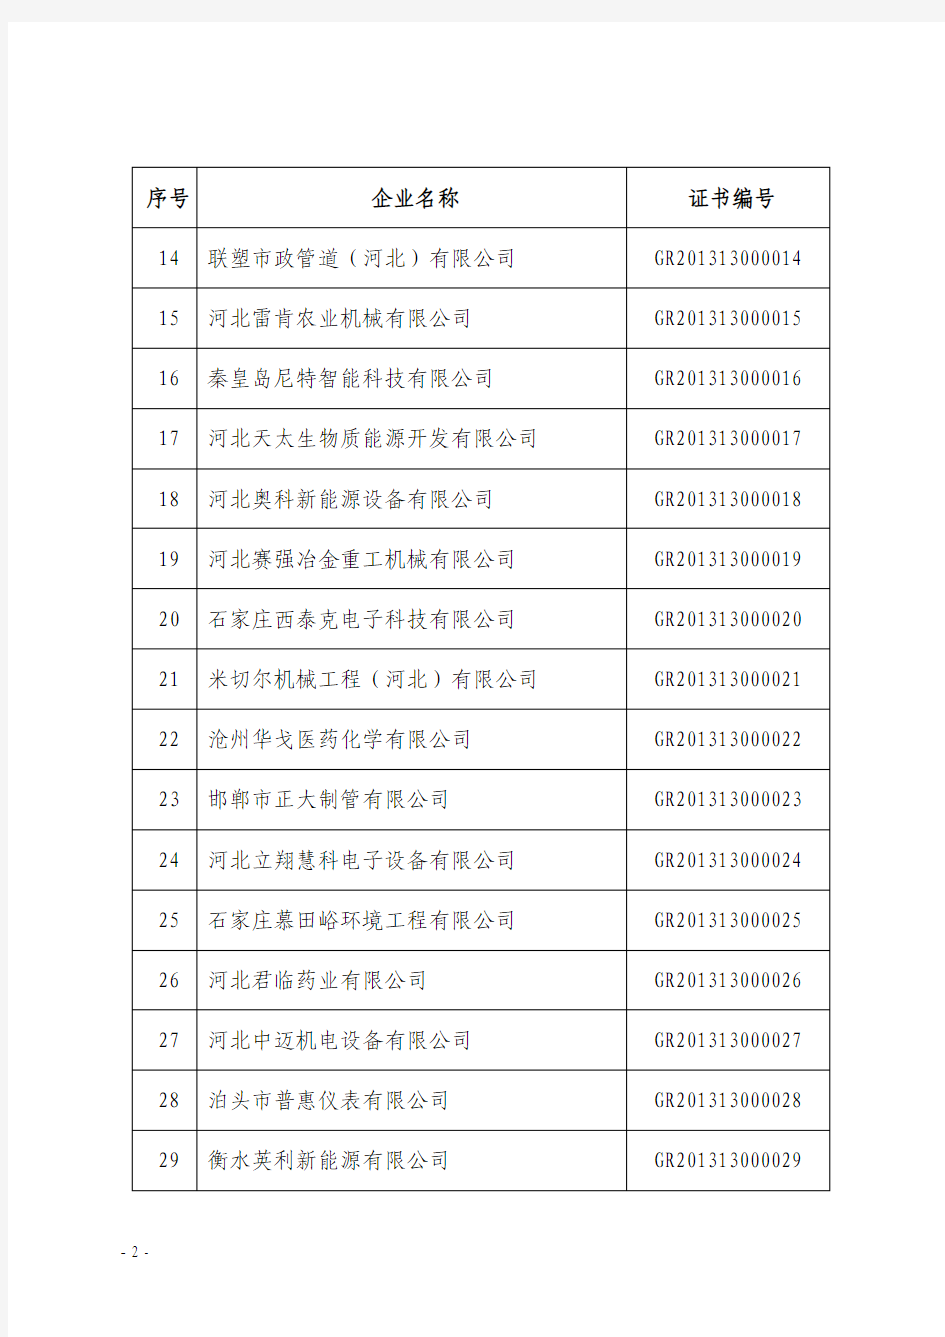 河北省2013年第一批高新技术企业名单